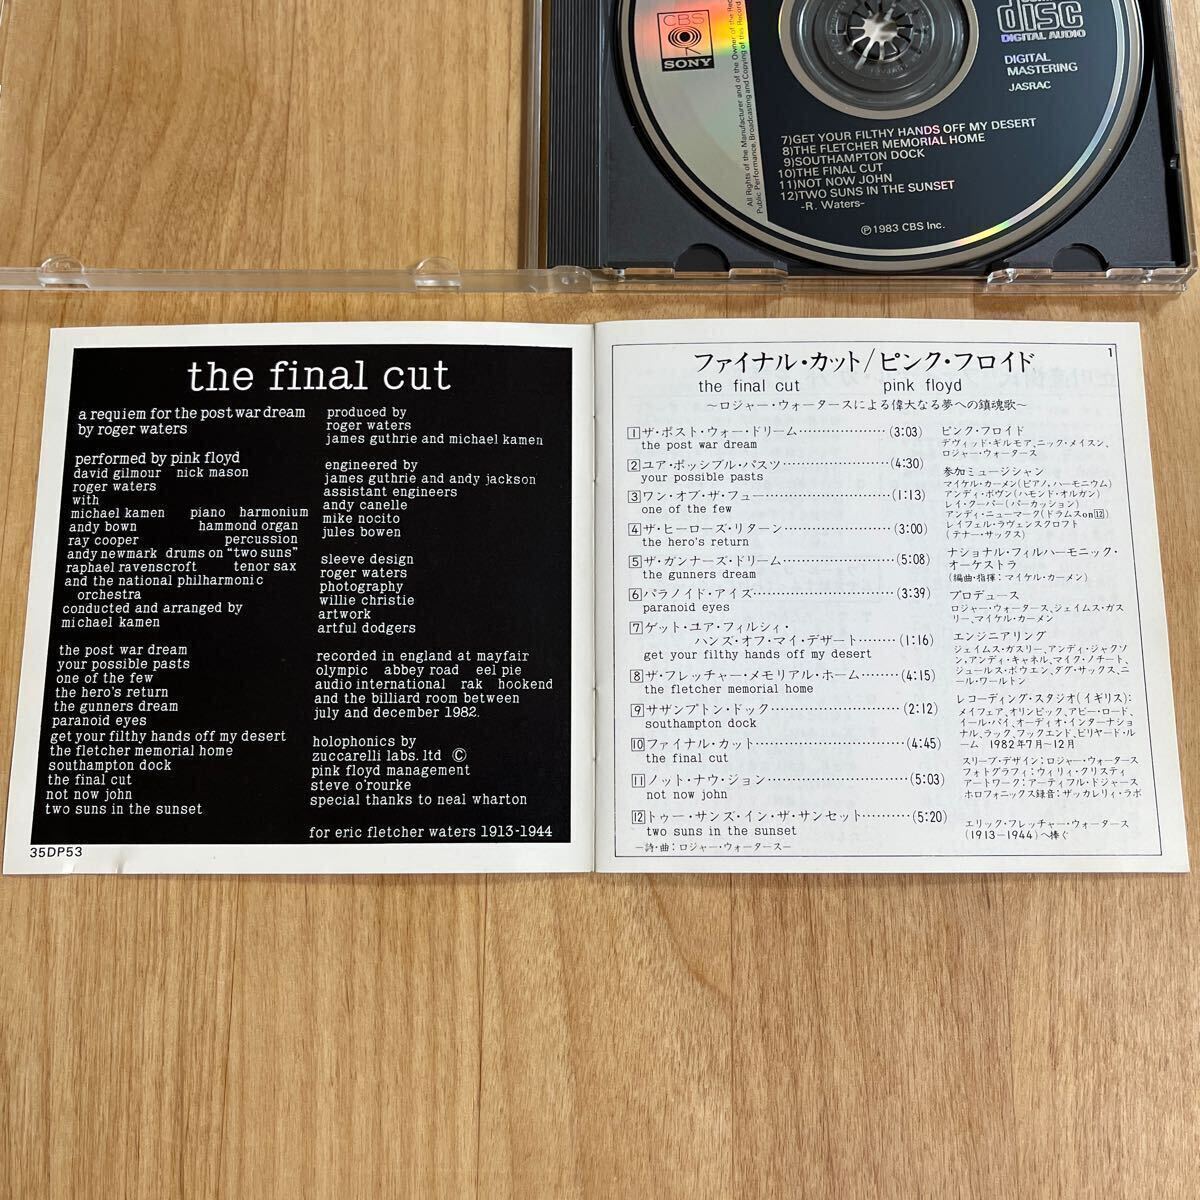 【 旧規格 CSR刻印 35DP -53 】 ピンク・フロイド / ファイナル・カット PINK FLOYD / THE FINAL CUT CBS SONY 国内初期3500円盤CD _画像9